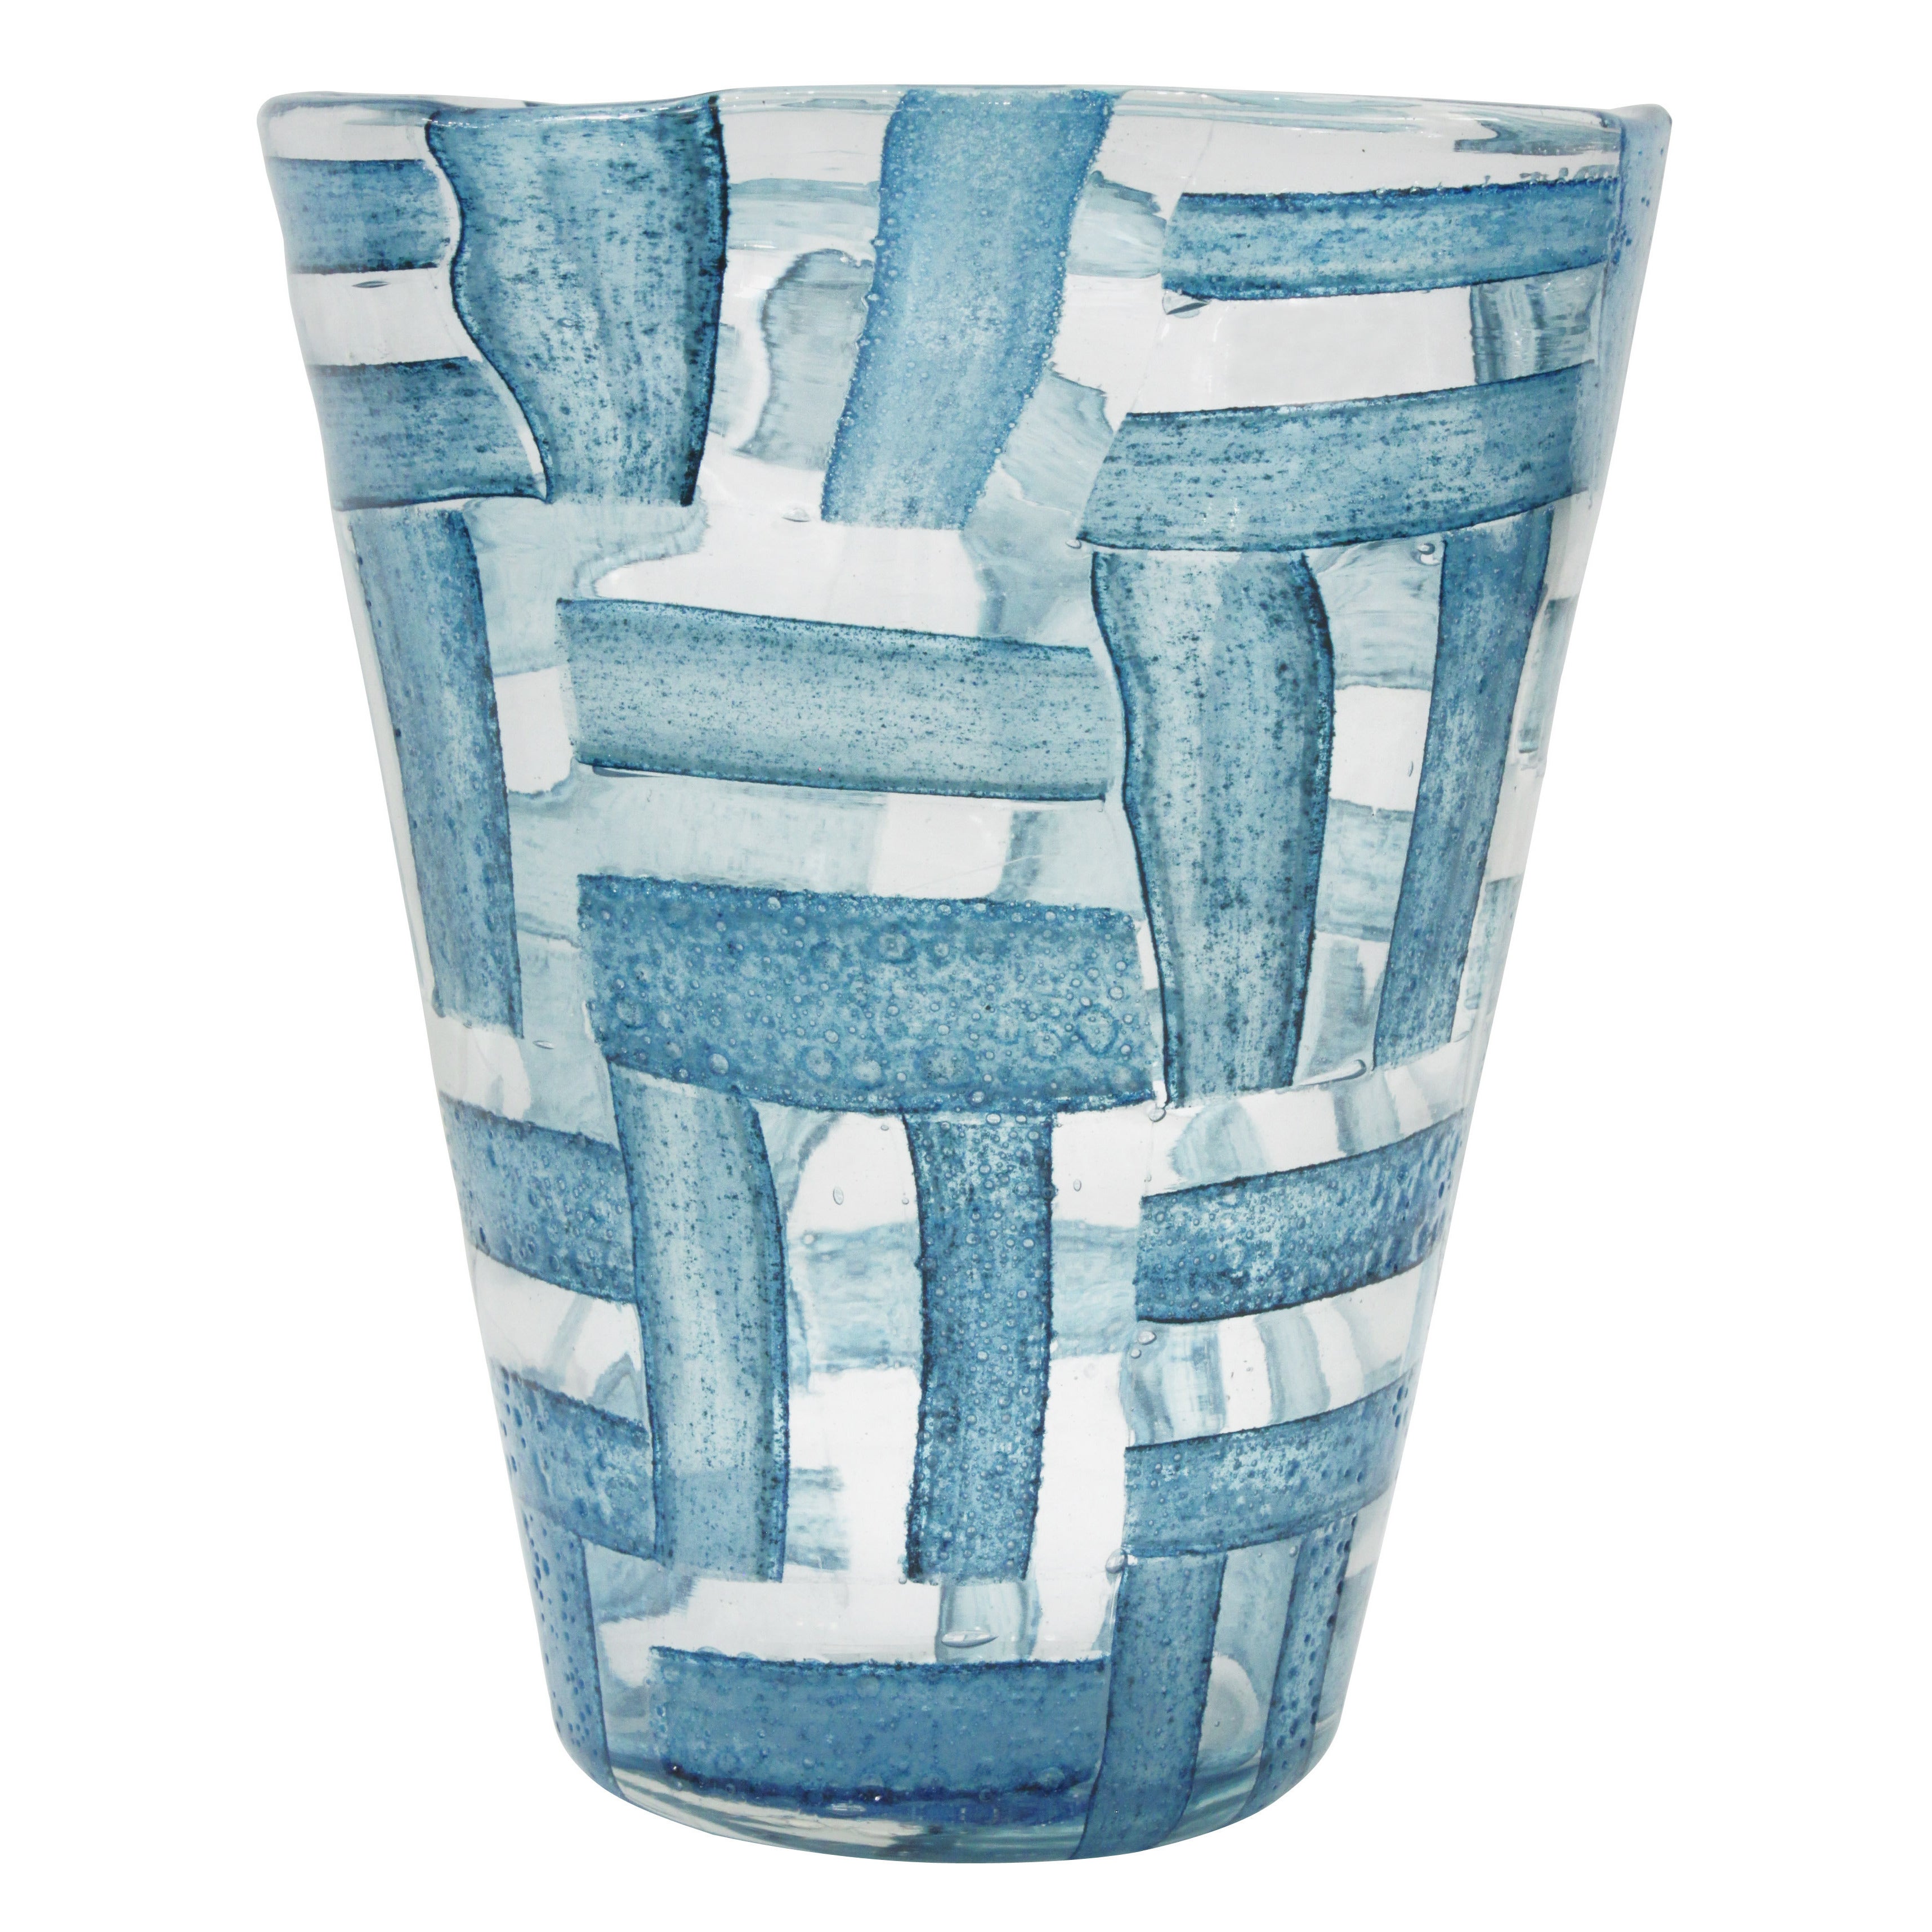 Rare Handblown Glass "Alterni" Vase by Ercole Barovier